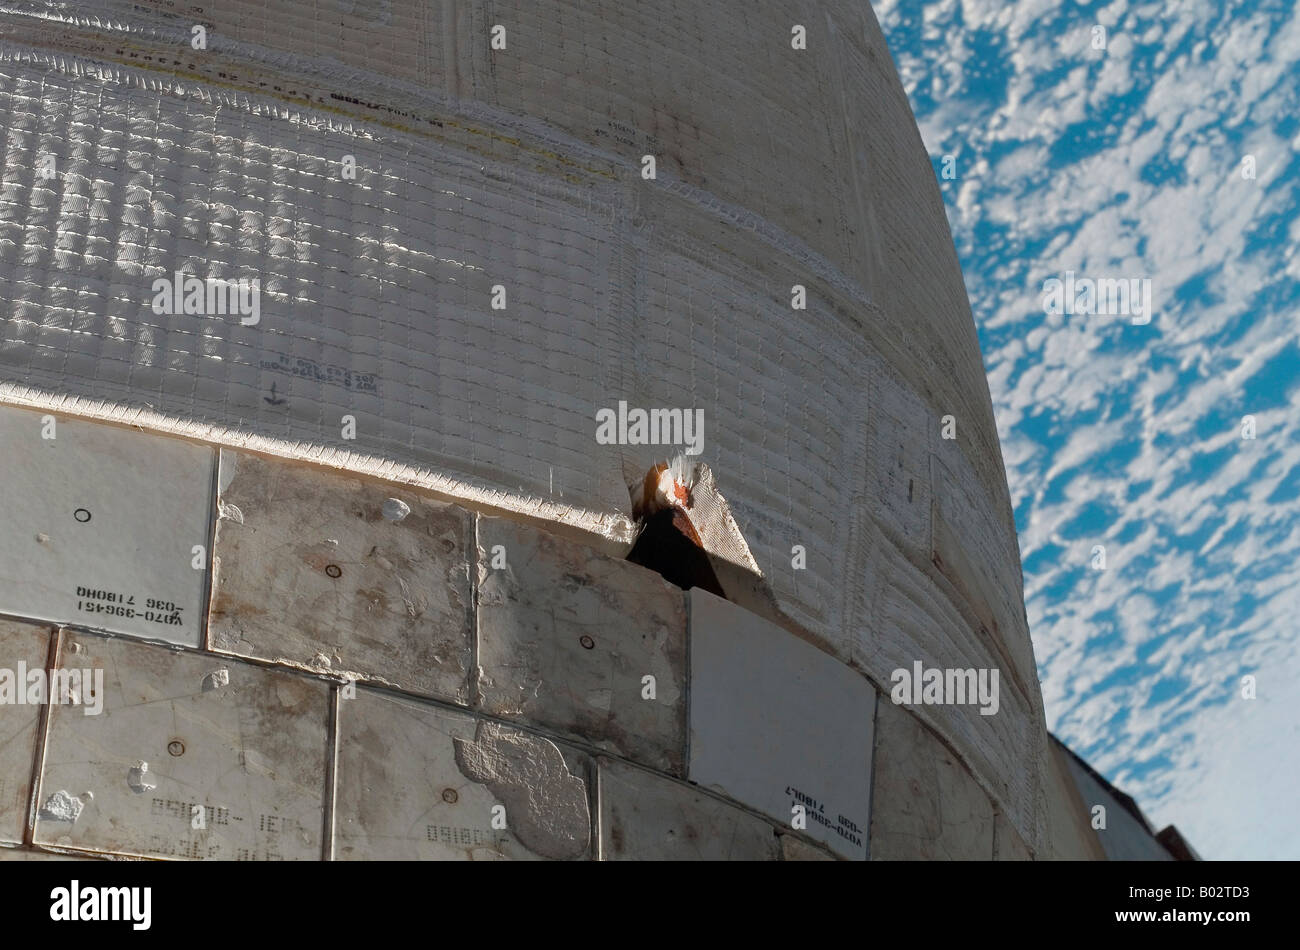 Vista ravvicinata della navetta spaziale Atlantis' sul lato del foro di manovra orbitale sistema pod. Foto Stock